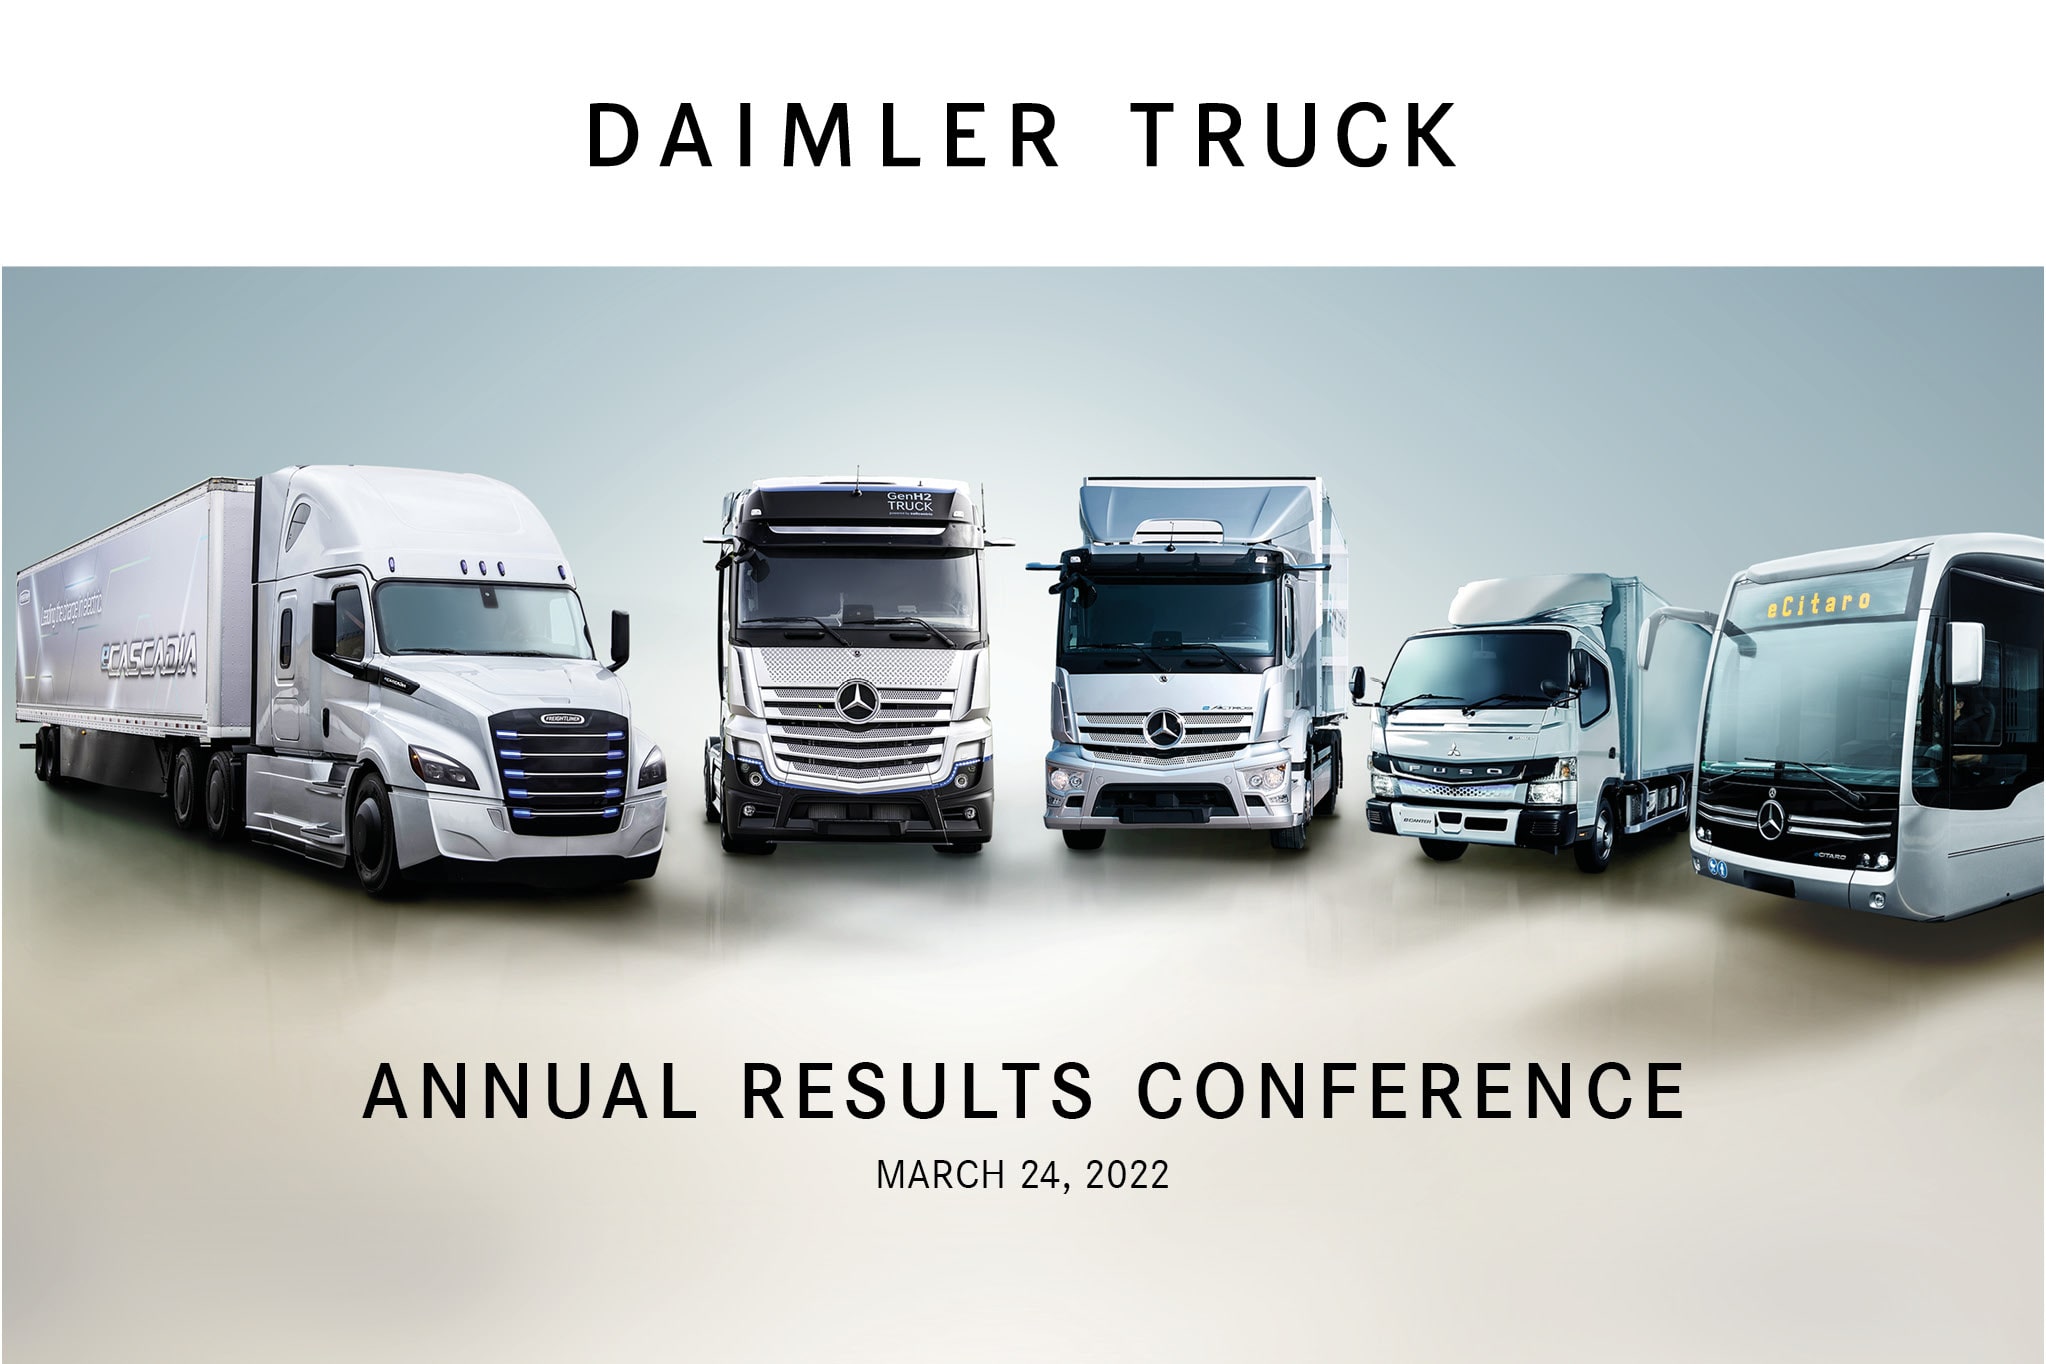 Daimler Truck steigert 2021 Absatz, Umsatz und Ergebnis deutlich, bleibt bei finanziellen Ambitionen weiter auf Kurs